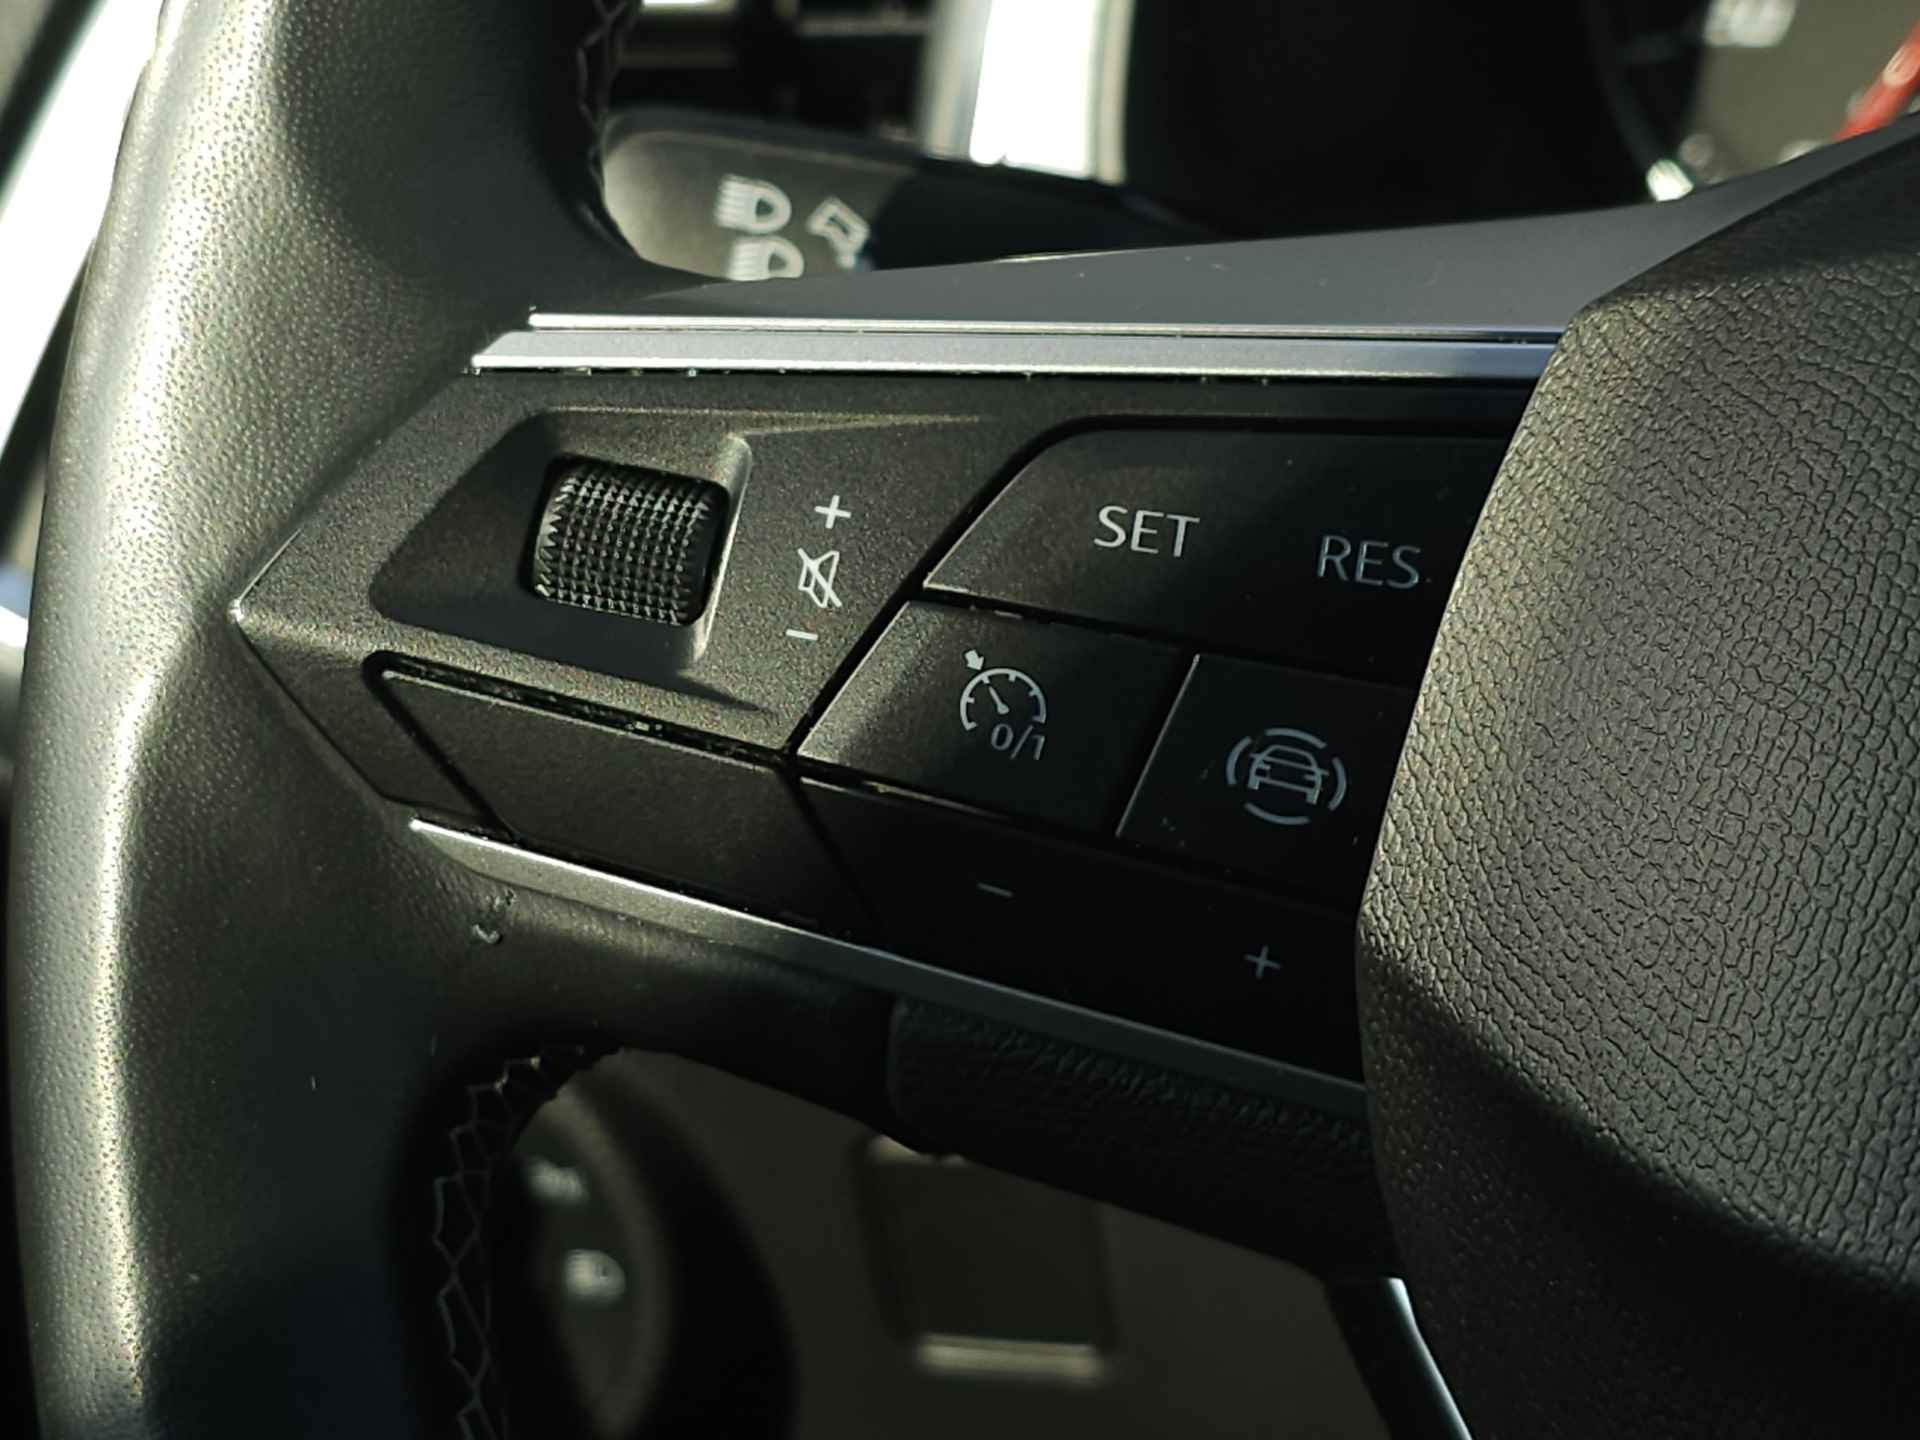 SEAT Ateca 1.0 TSI 110 pk Style Business Intense | Navigatie | LED | Lm velgen | Camera | Sensoren | All Season banden | incl. Bovag rijklaarpakket met 12 maanden garantie | - 20/35